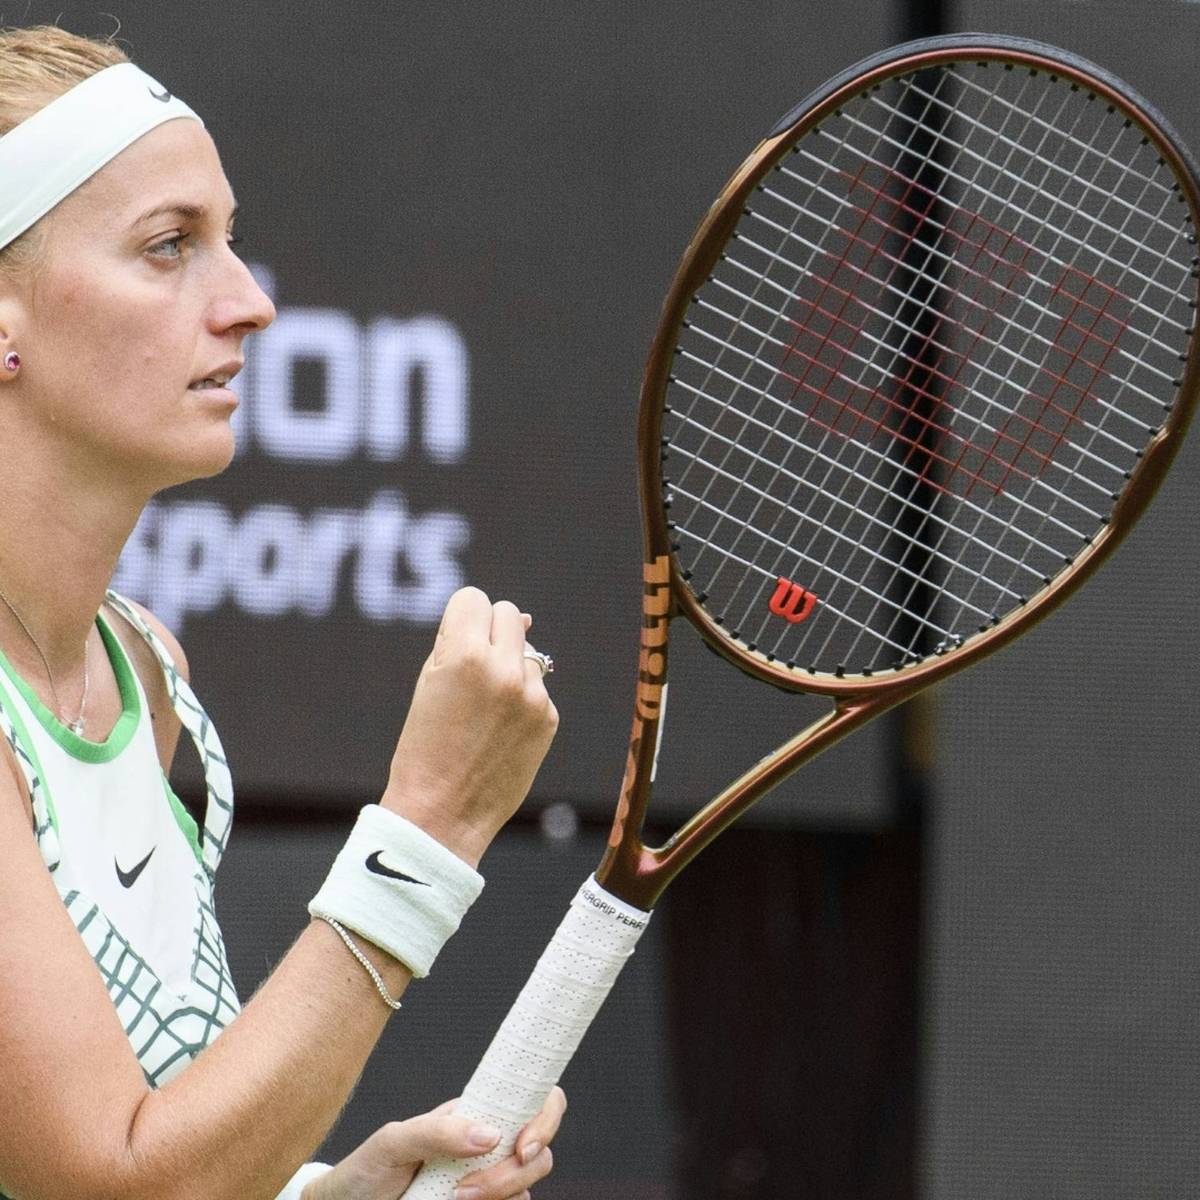 Tennis Kvitova feiert Turniersieg in Berlin